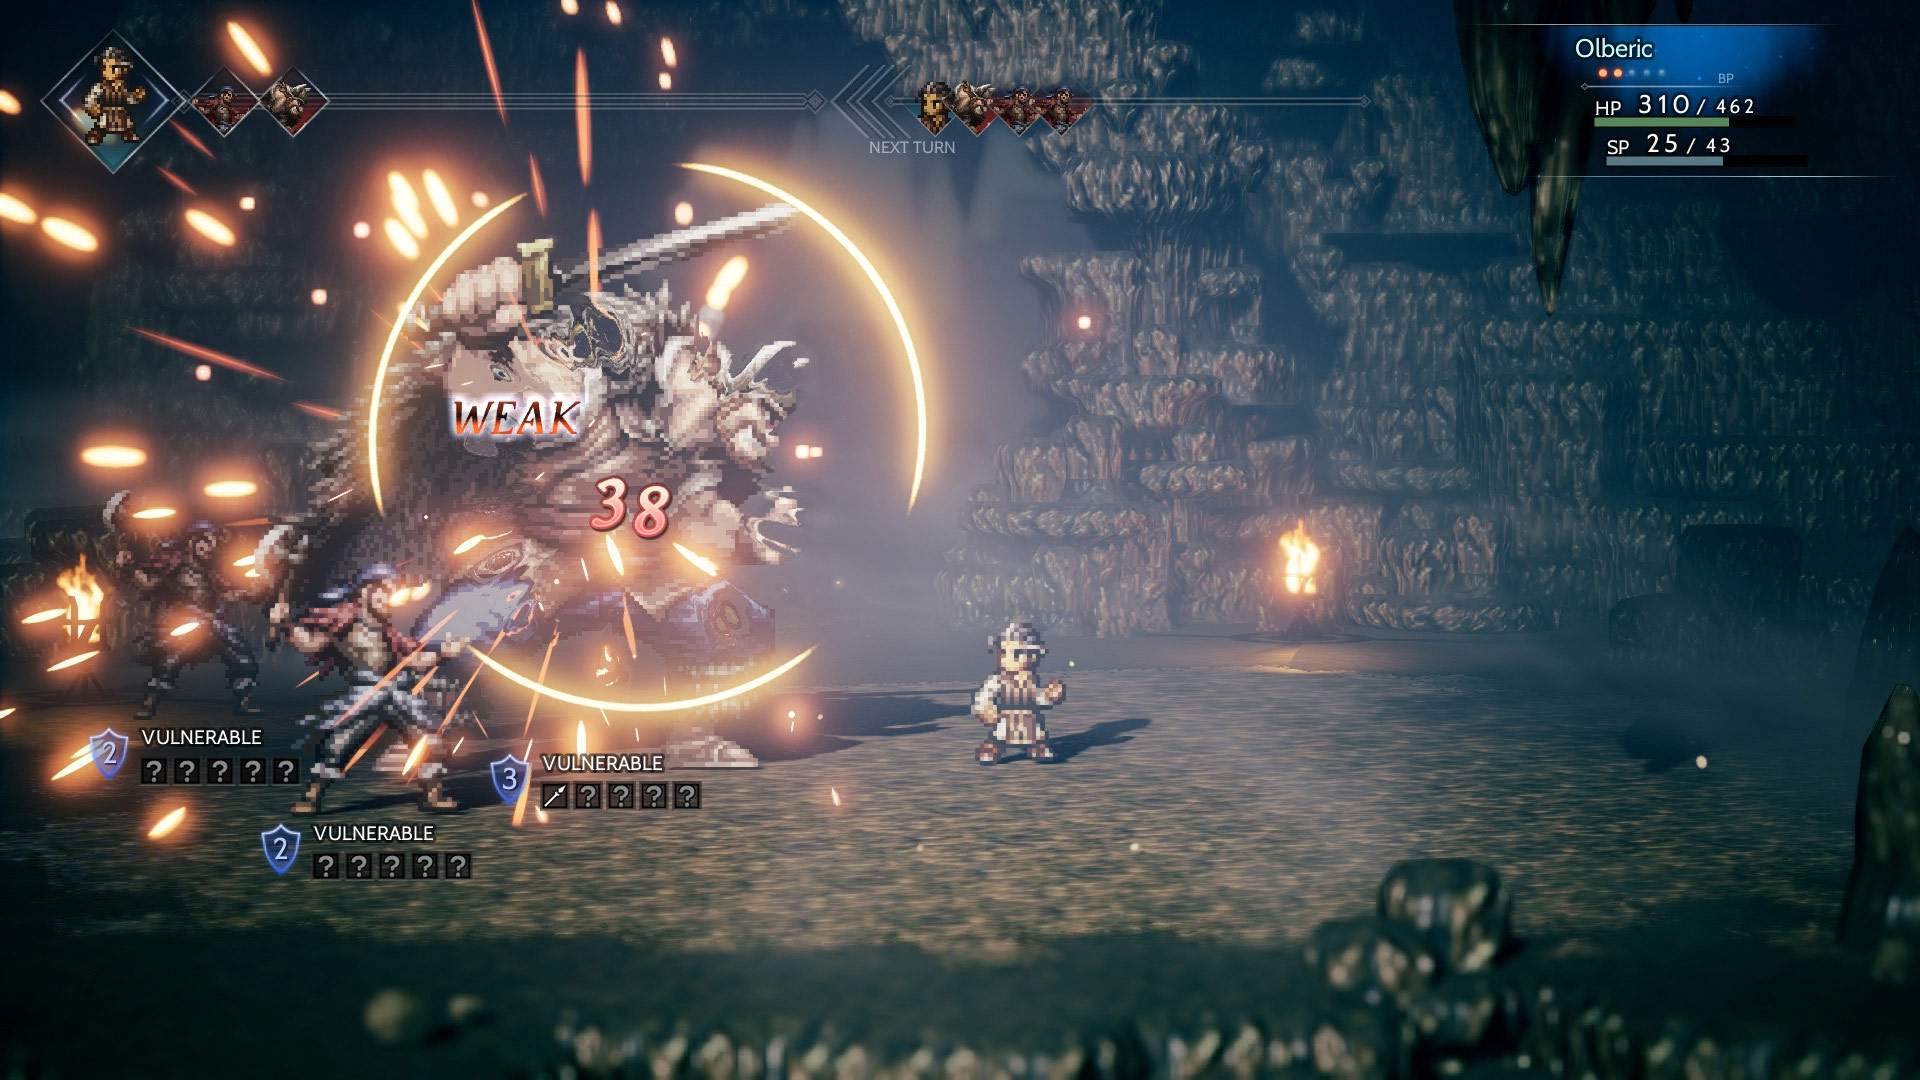 Capture d'écran d'un combat au cours duquel Olberic attaque trois ennemis dans un donjon sombre.